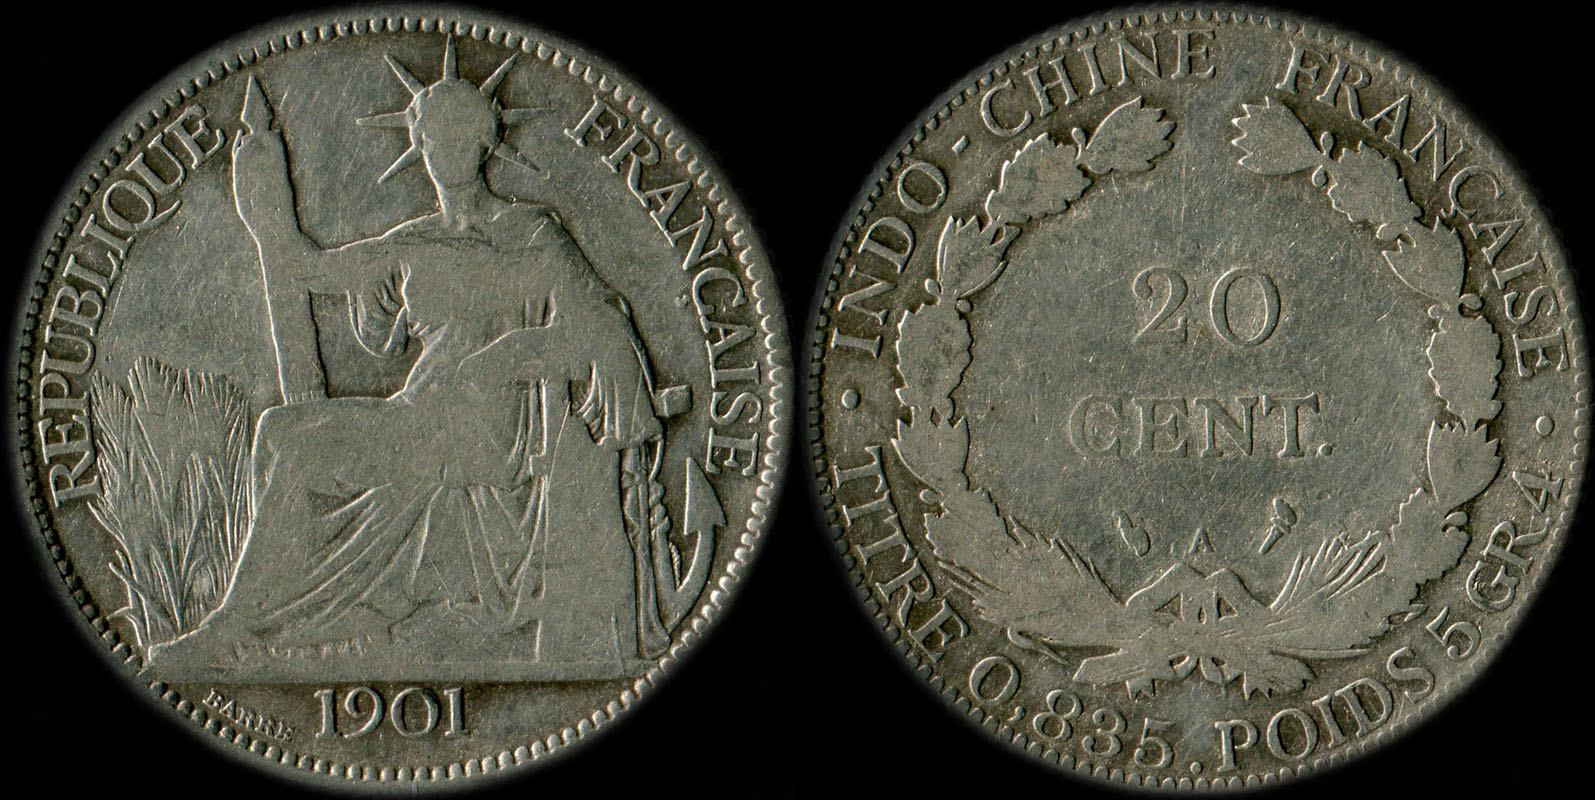 Pice de 20 centimes Indochine 1901